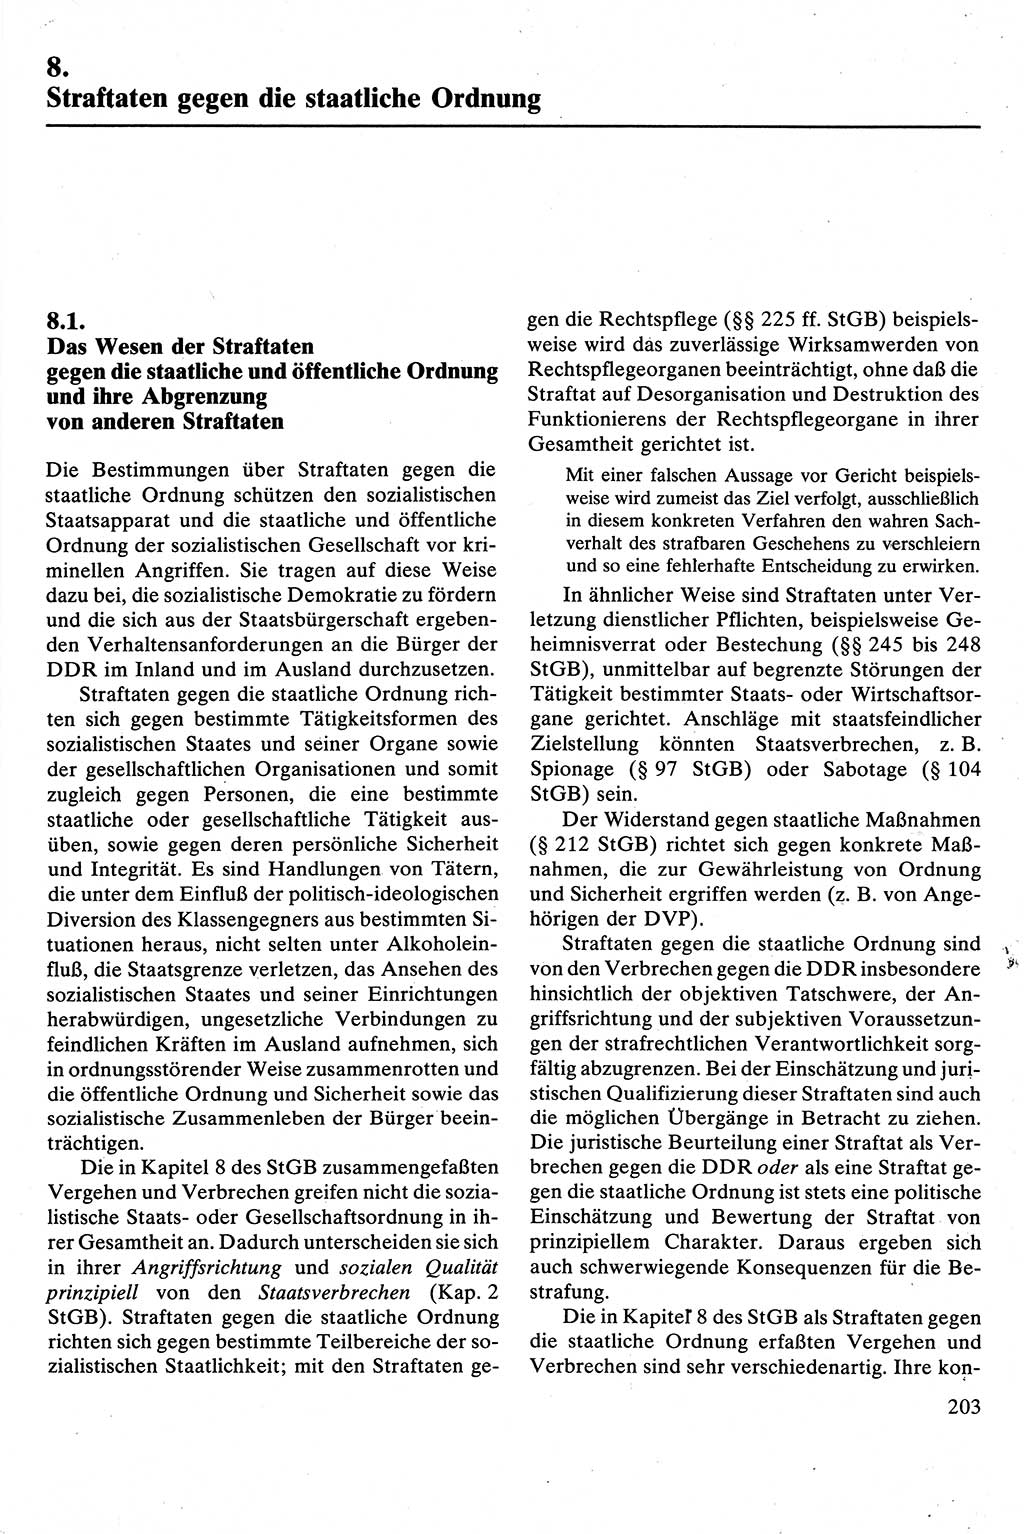 Strafrecht [Deutsche Demokratische Republik (DDR)], Besonderer Teil, Lehrbuch 1981, Seite 203 (Strafr. DDR BT Lb. 1981, S. 203)